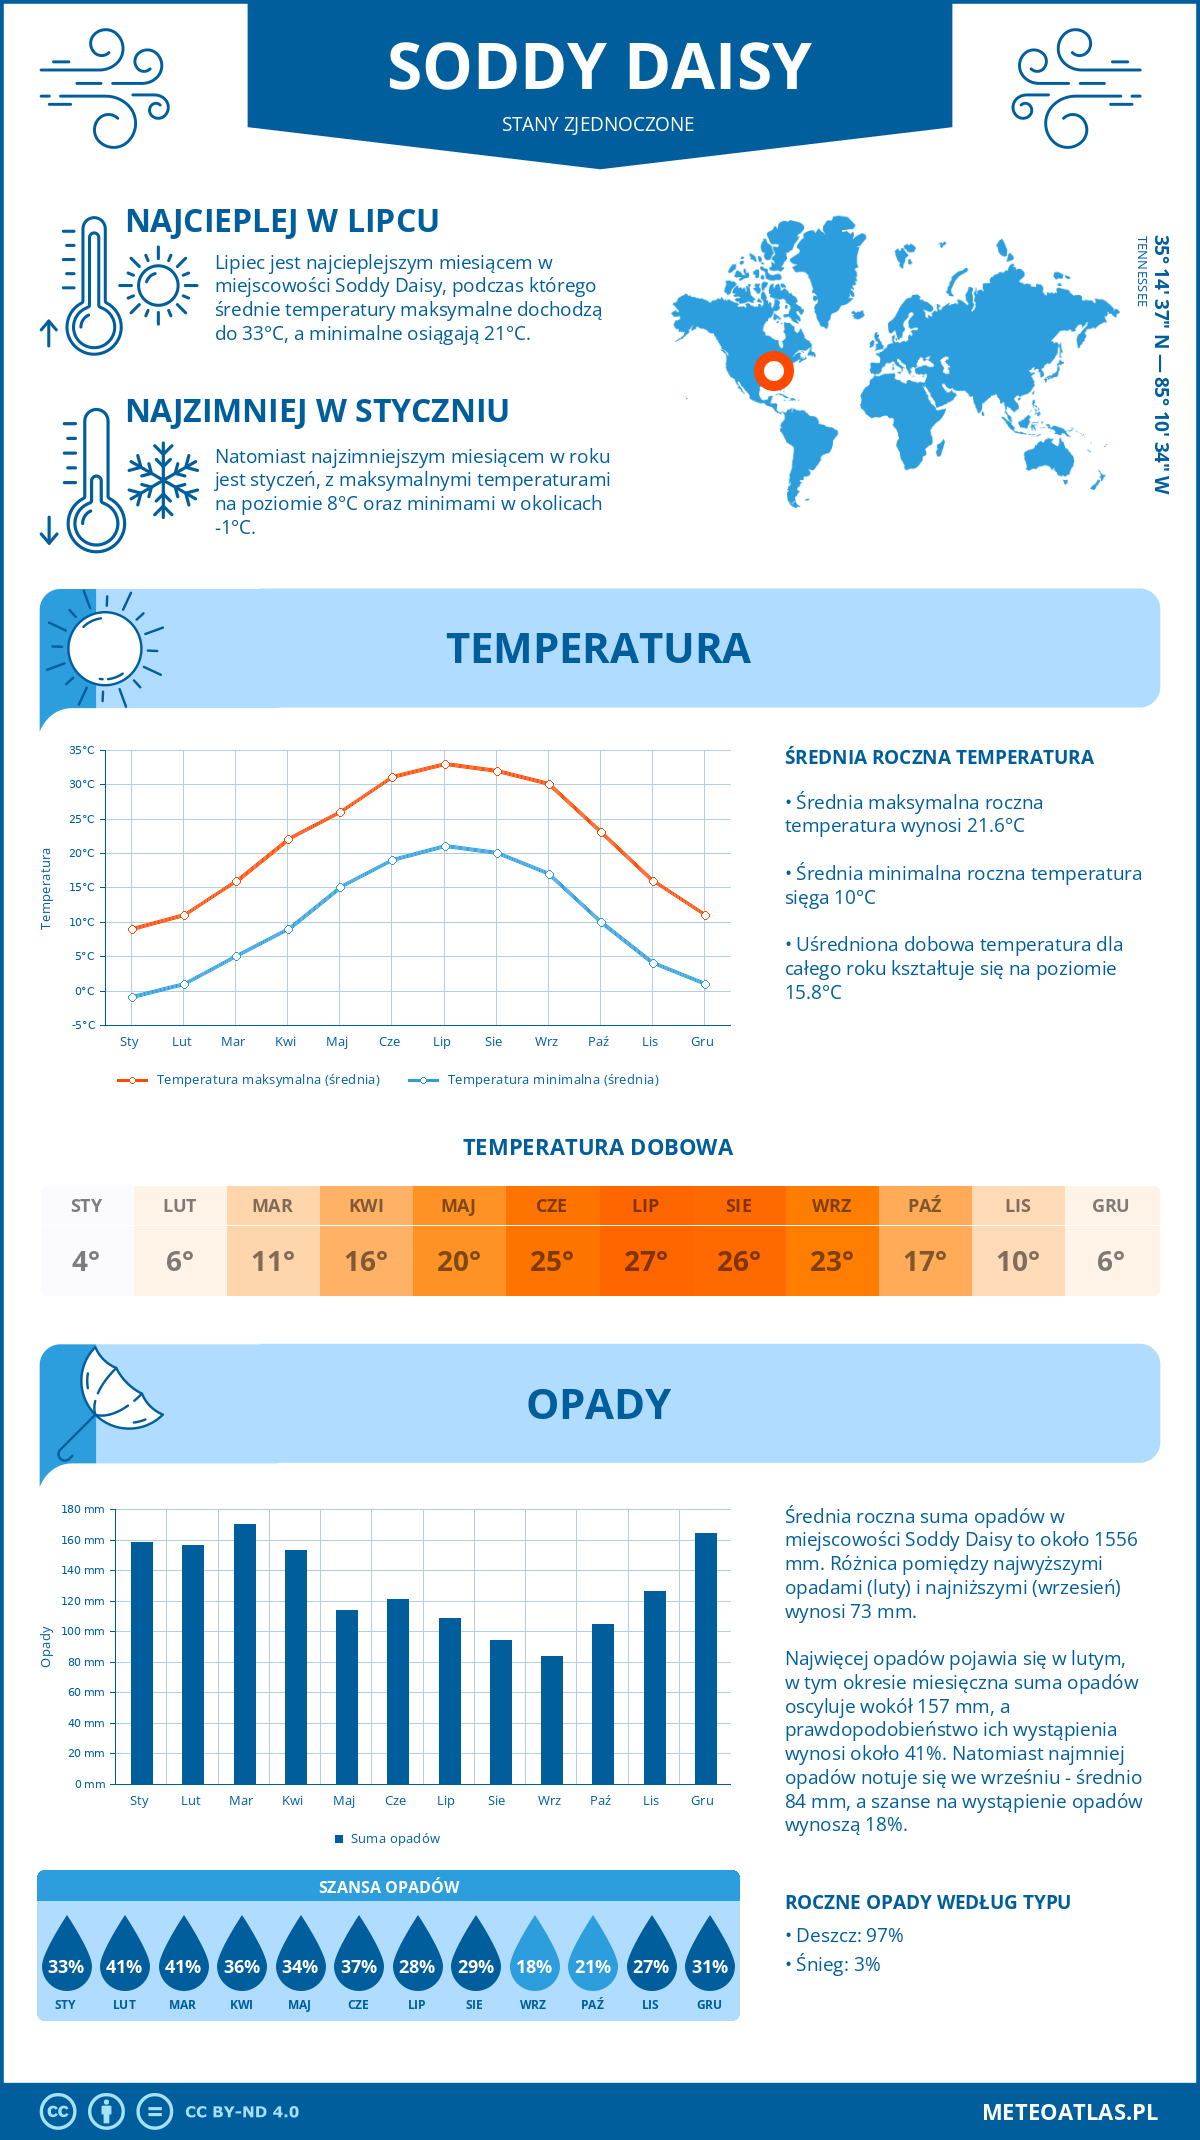 Pogoda Soddy Daisy (Stany Zjednoczone). Temperatura oraz opady.